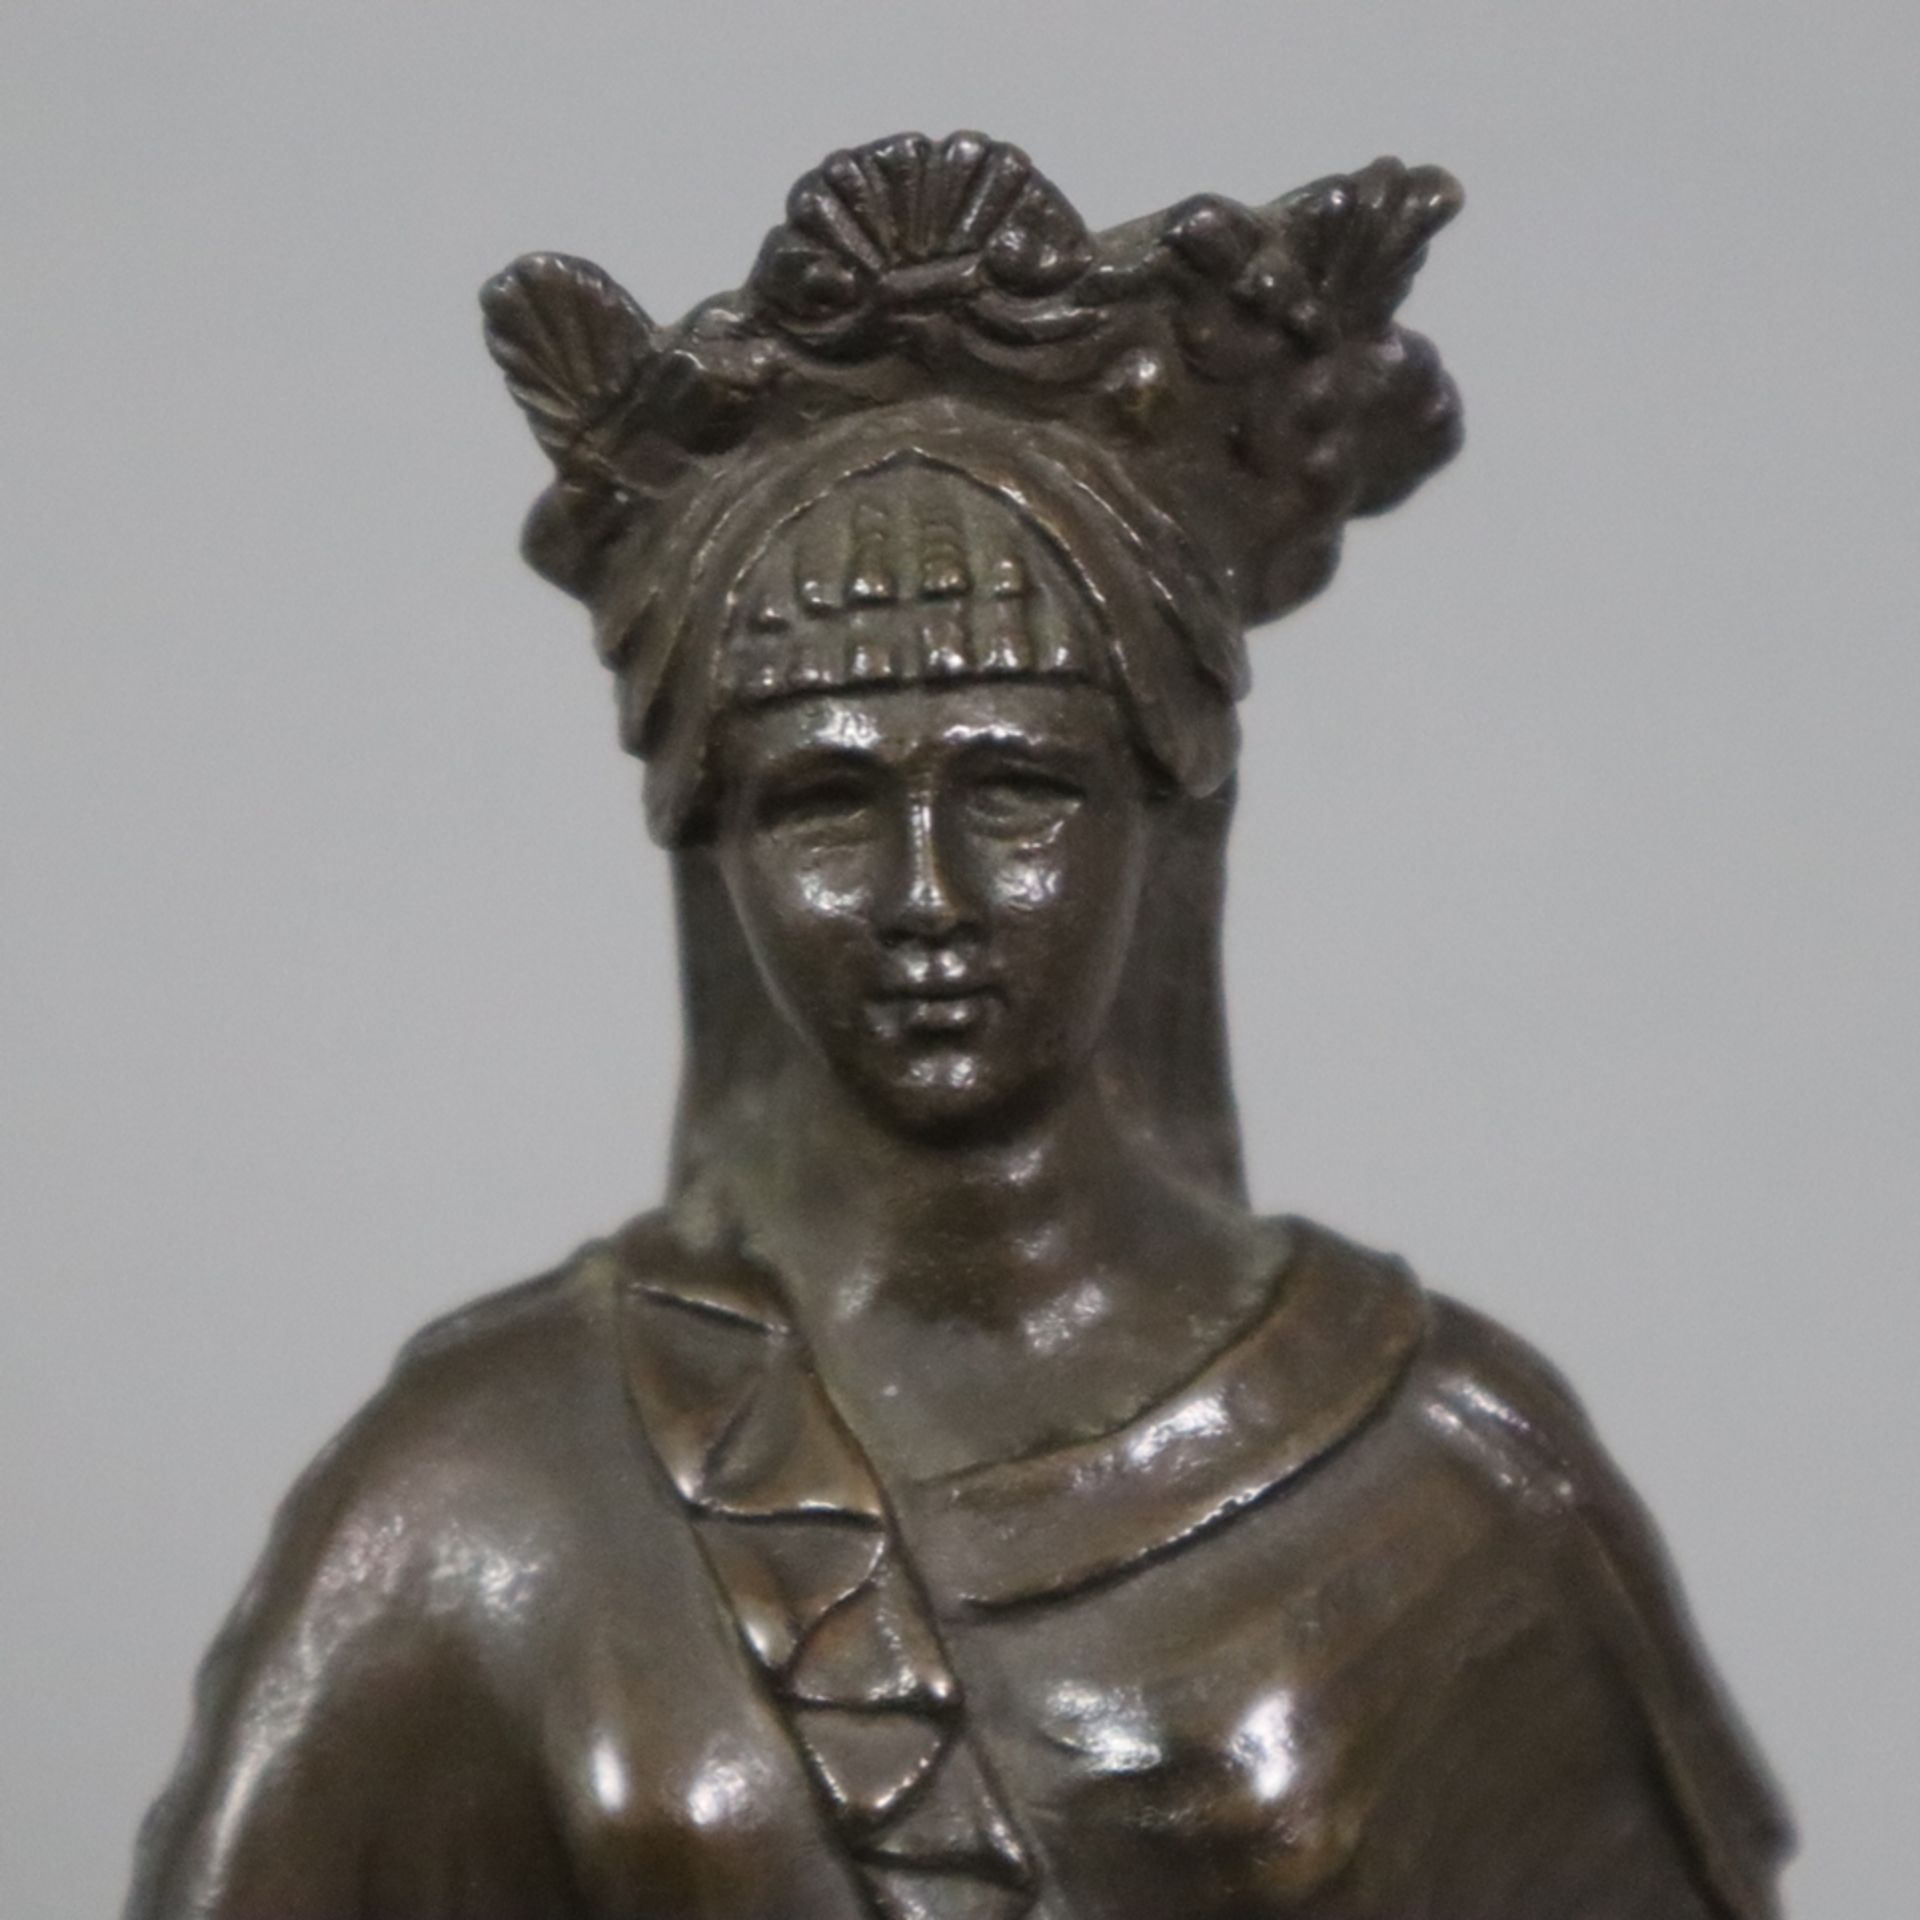 Figurine einer antiken Priesterin - Bronze, braun patiniert, antikisierende Frauenfigur mit Diadem, - Bild 3 aus 8